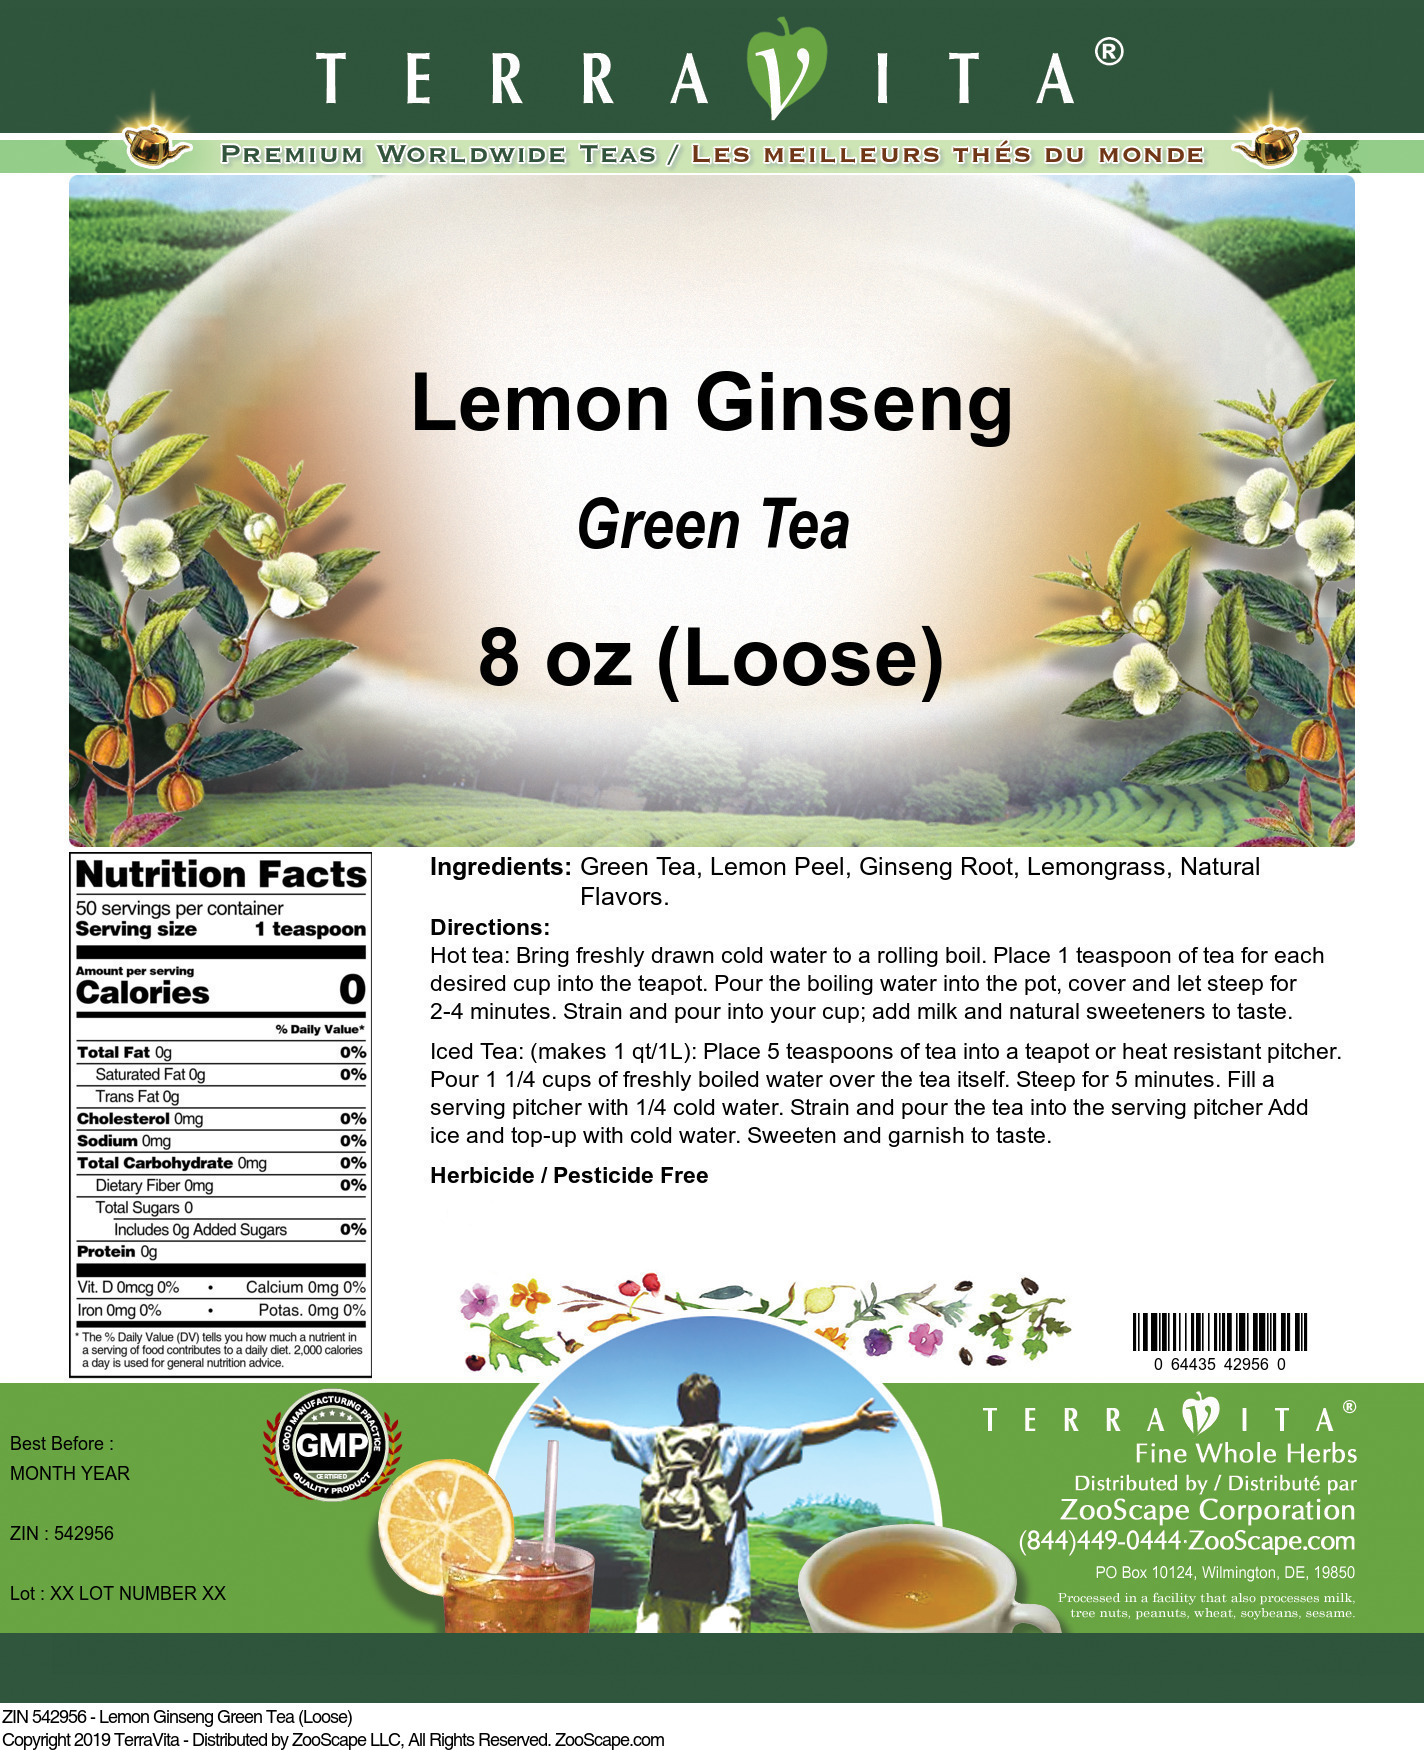 Lemon Ginseng Green Tea (Loose) - Label